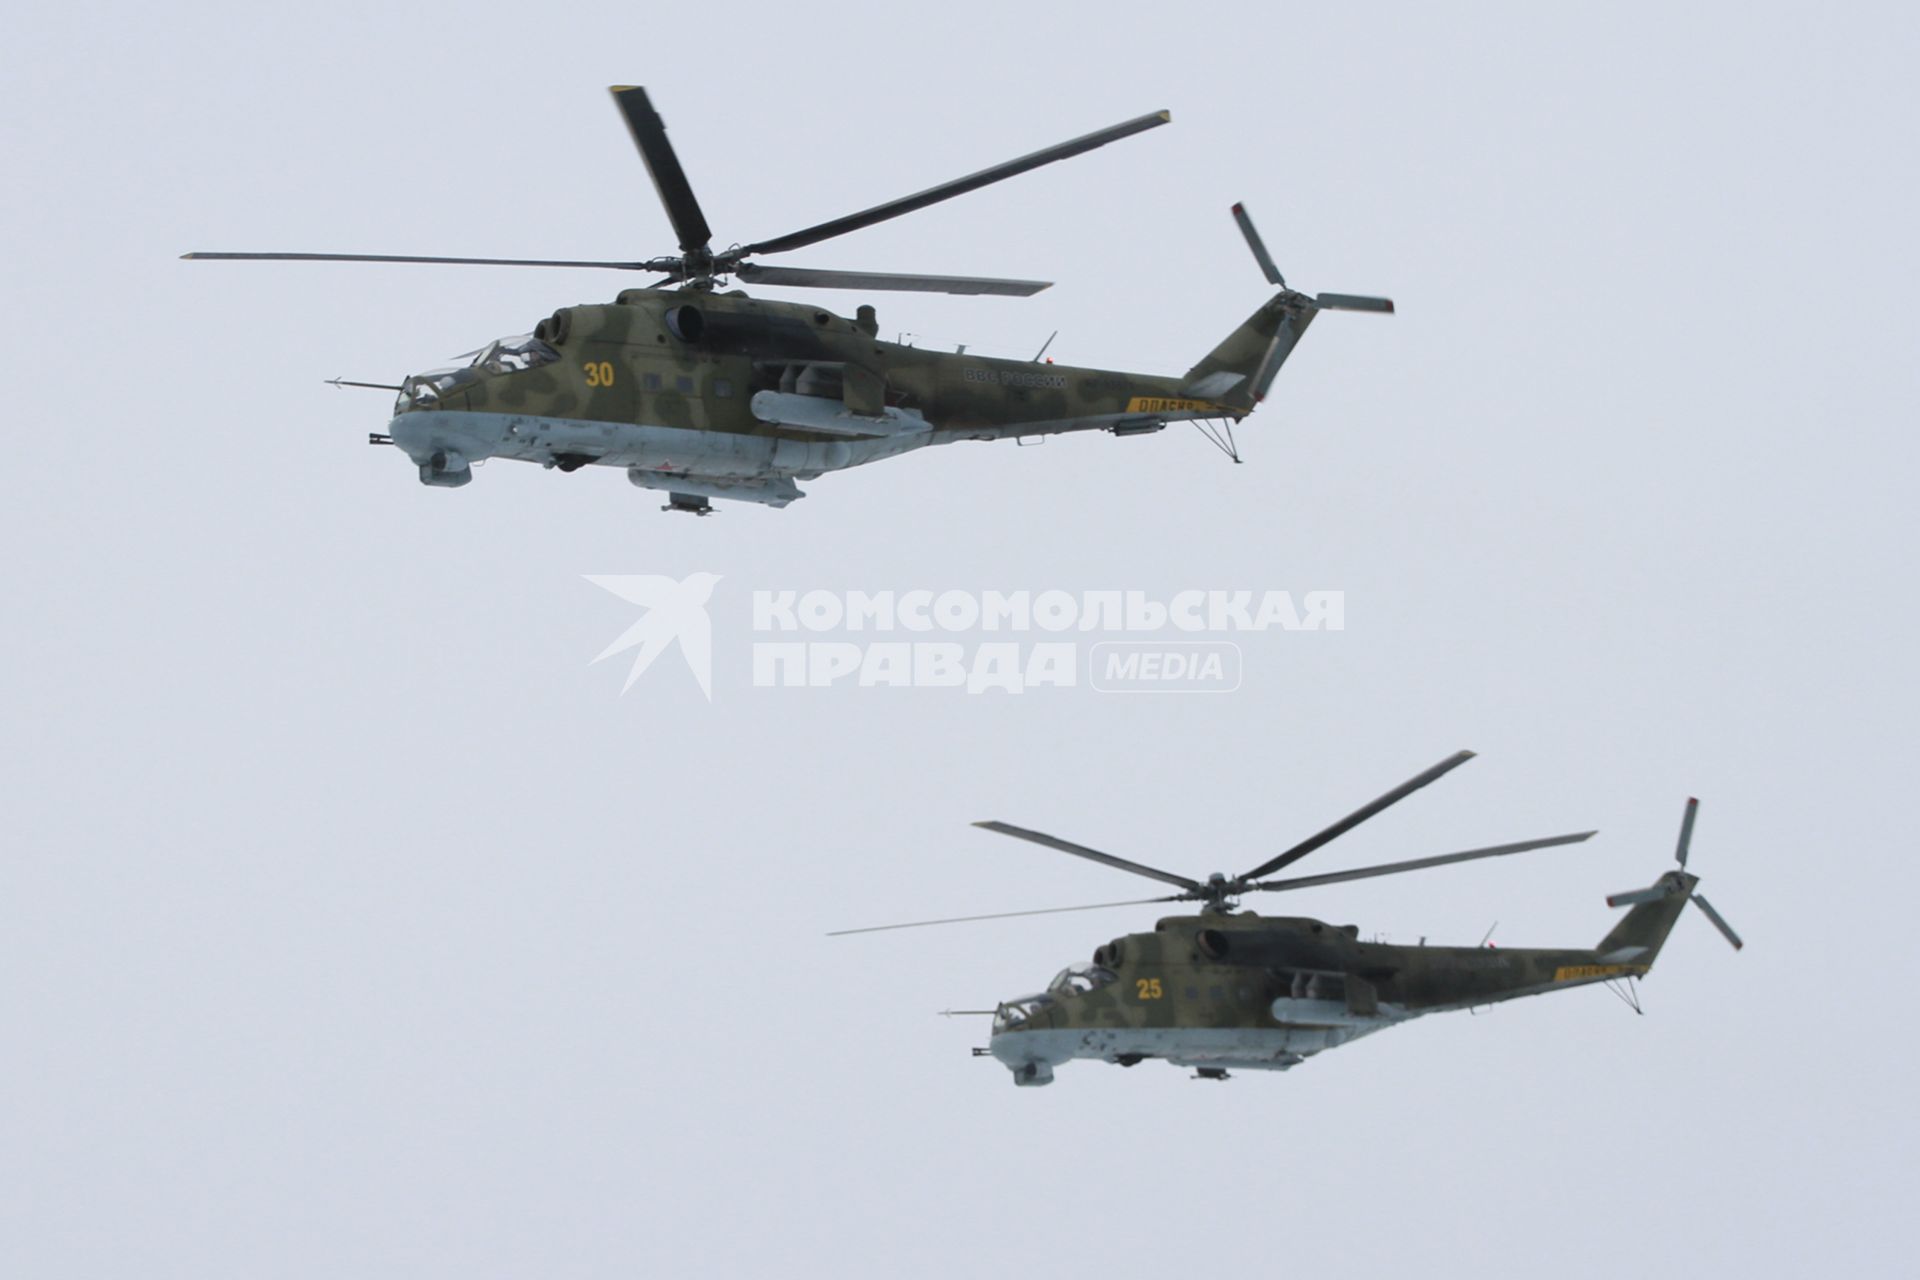 Барнаул. Авиашоу. На снимке: боевые вертолеты Ми-24.